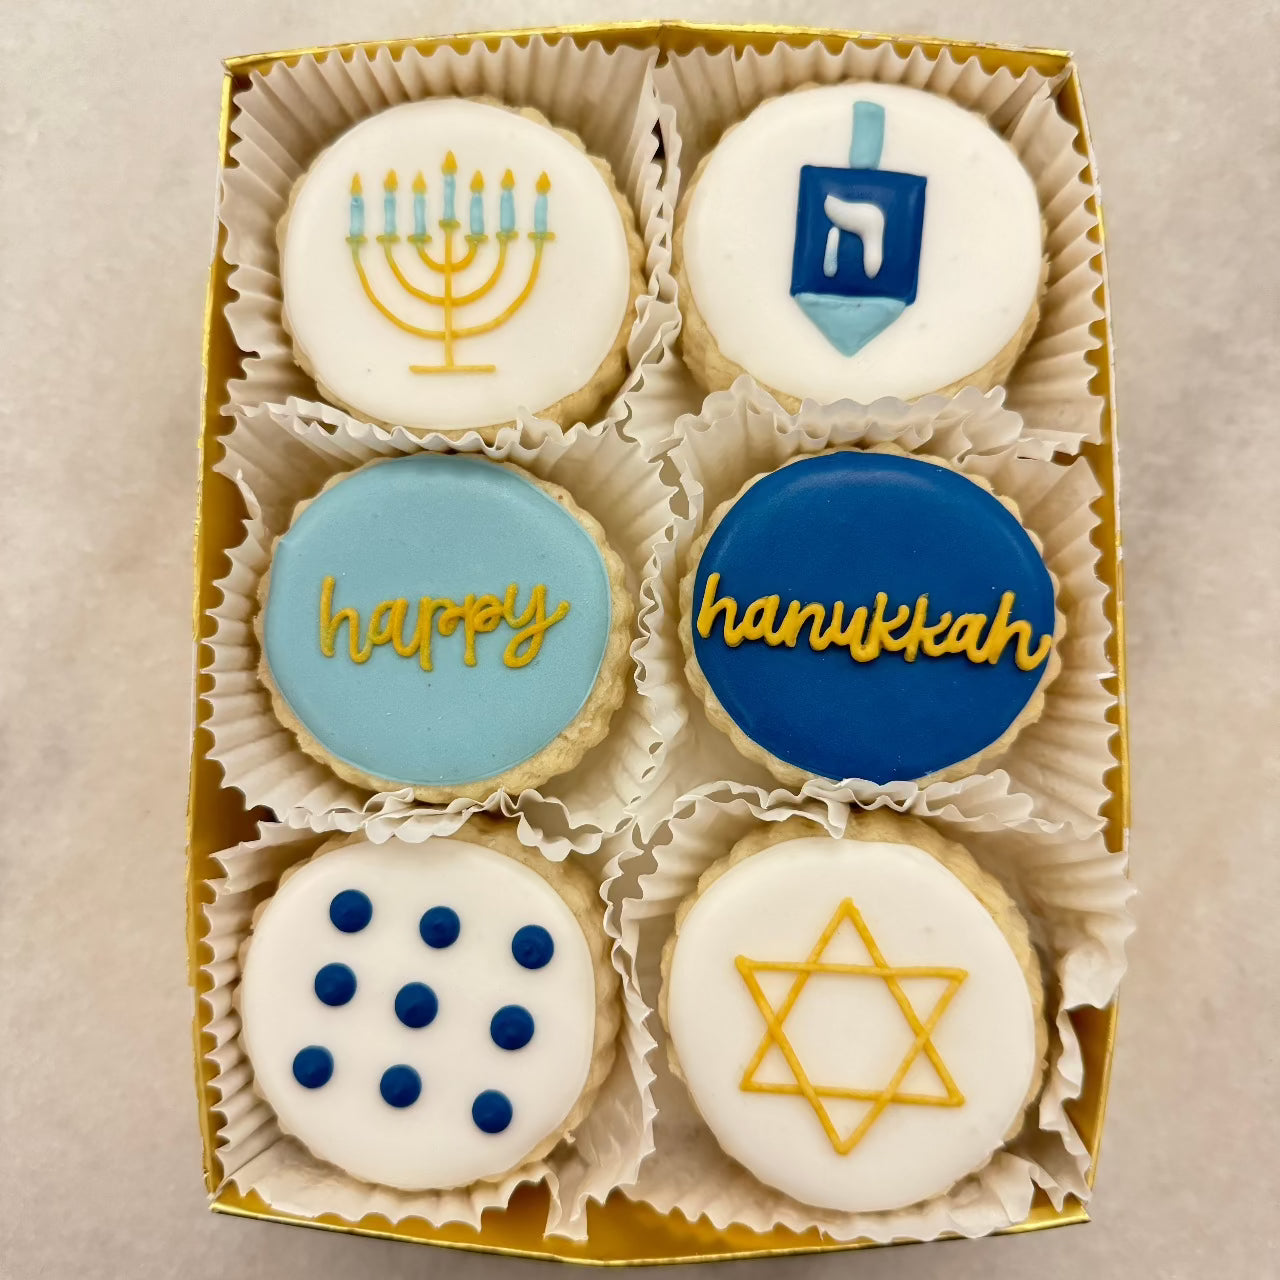 Happy Hanukkah shortbread gift tin by Le Gourmet Baking in Dallas Texas